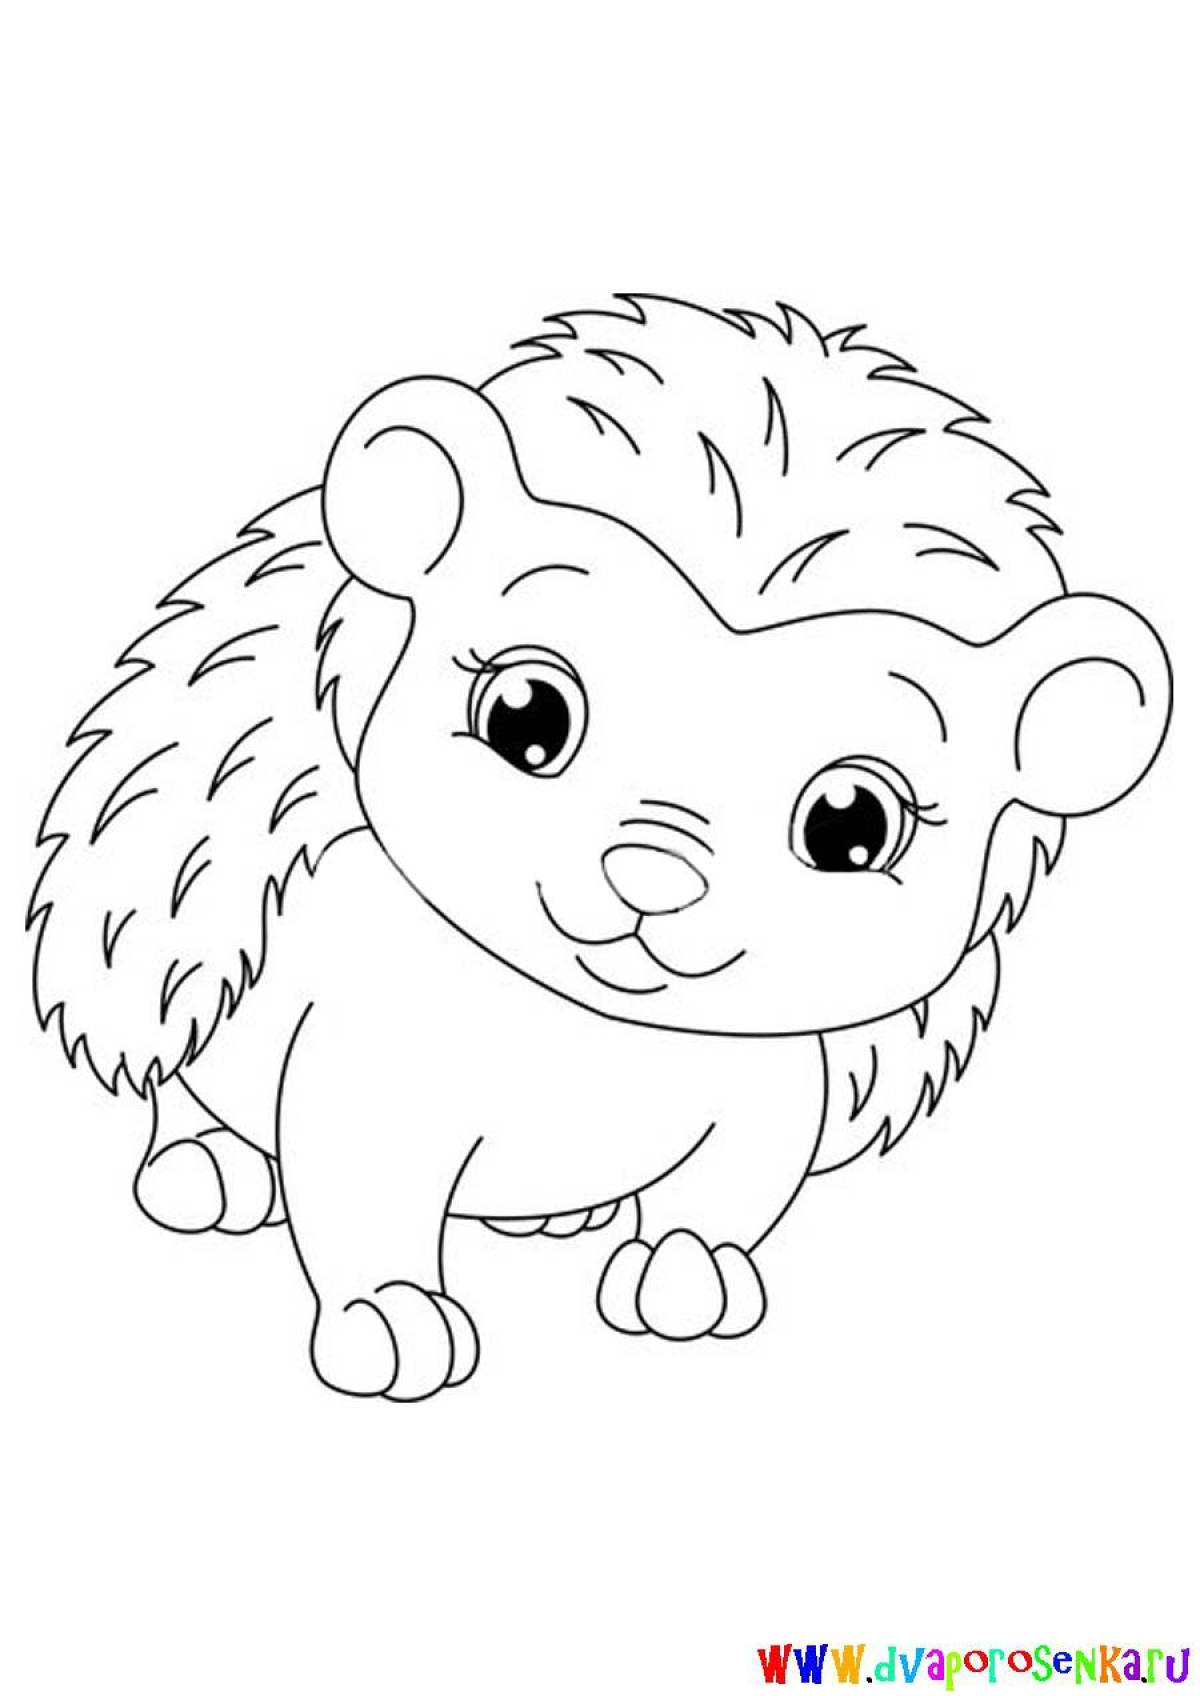 Coloring page adorable hedgehog